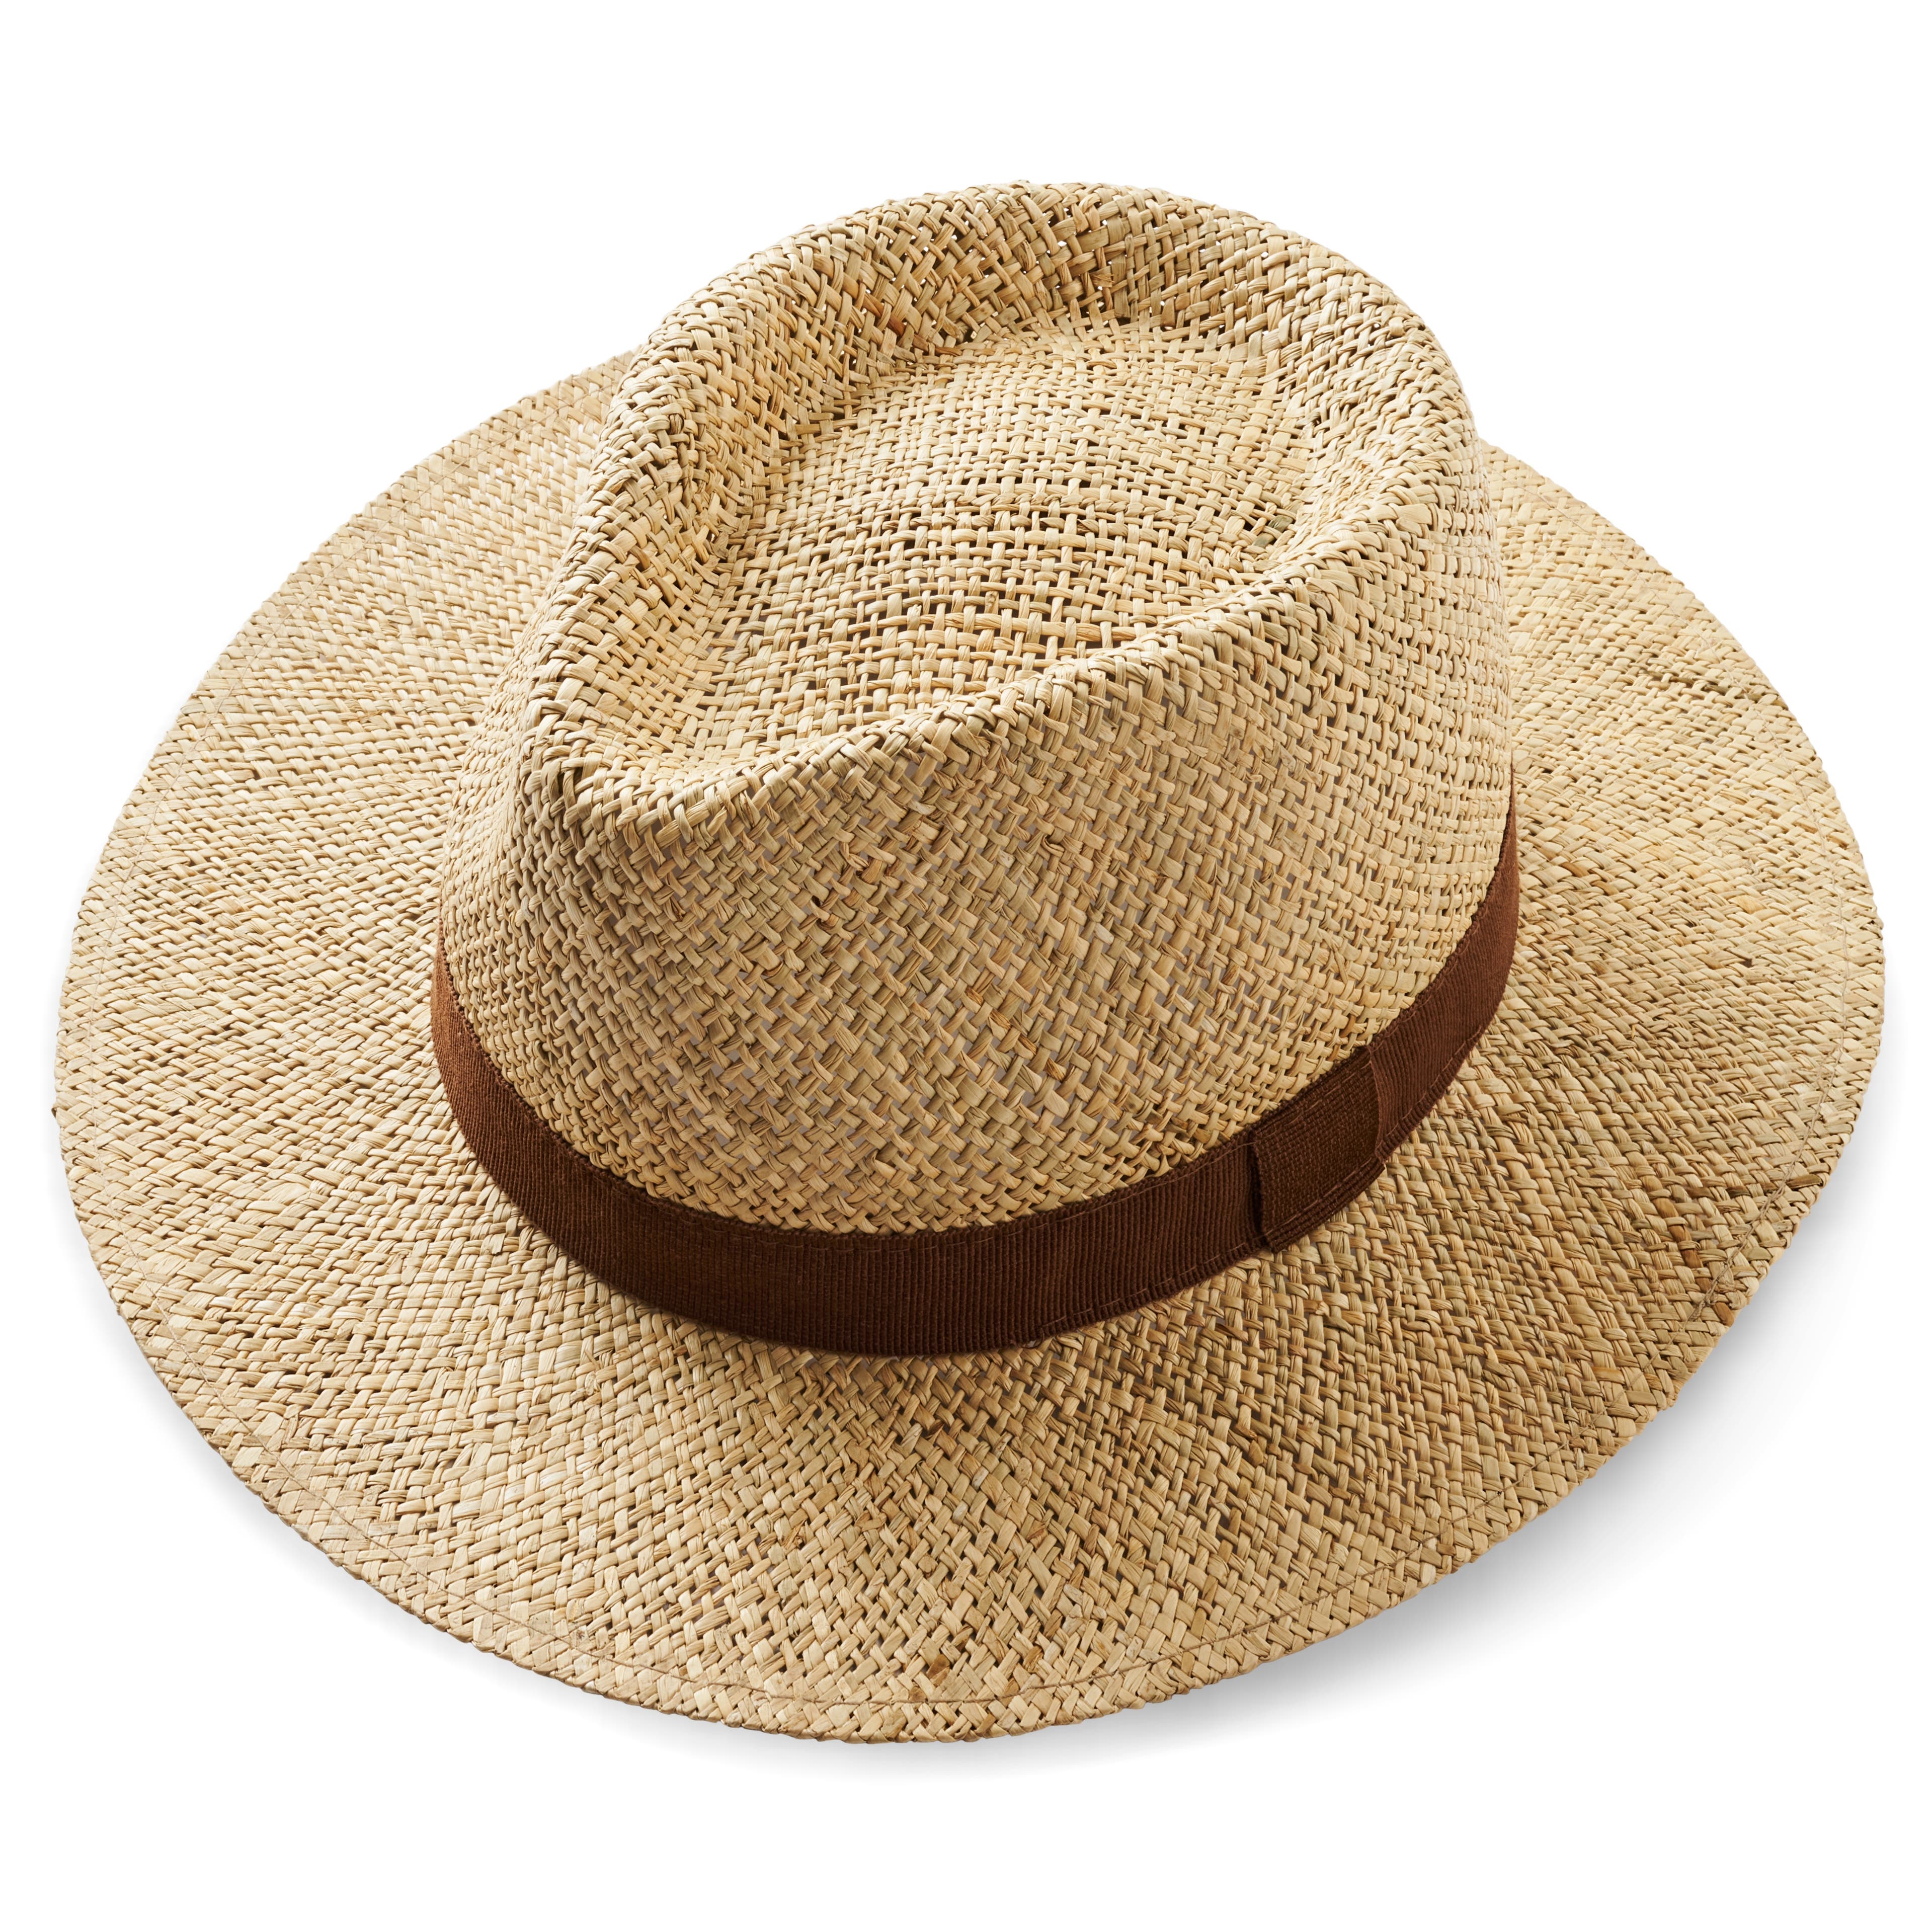 Přírodní slaměný panamský klobouk s hnědou stuhou